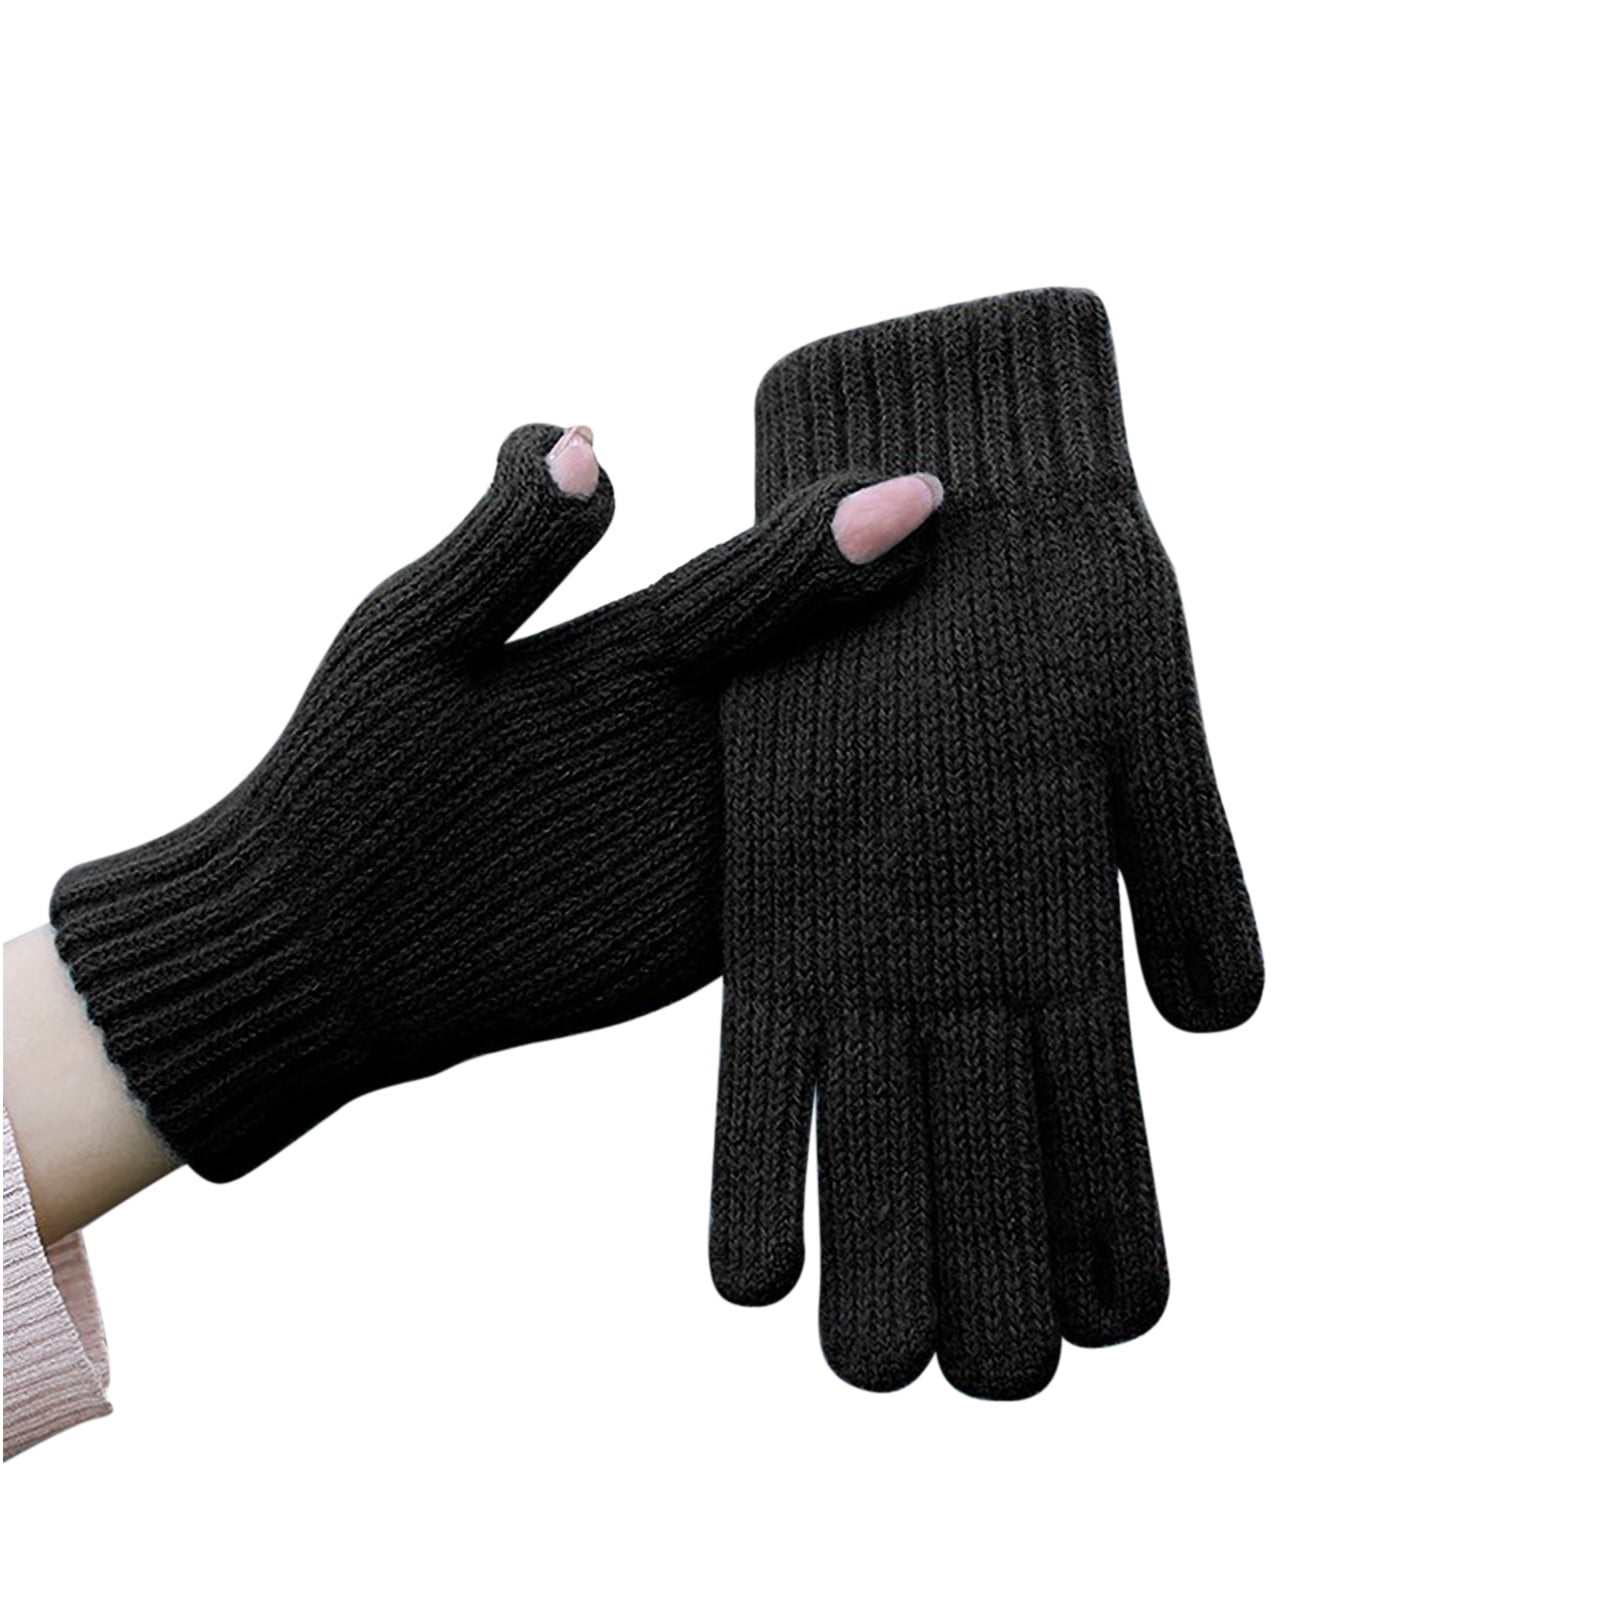 Black Lace Gloves Fingerless